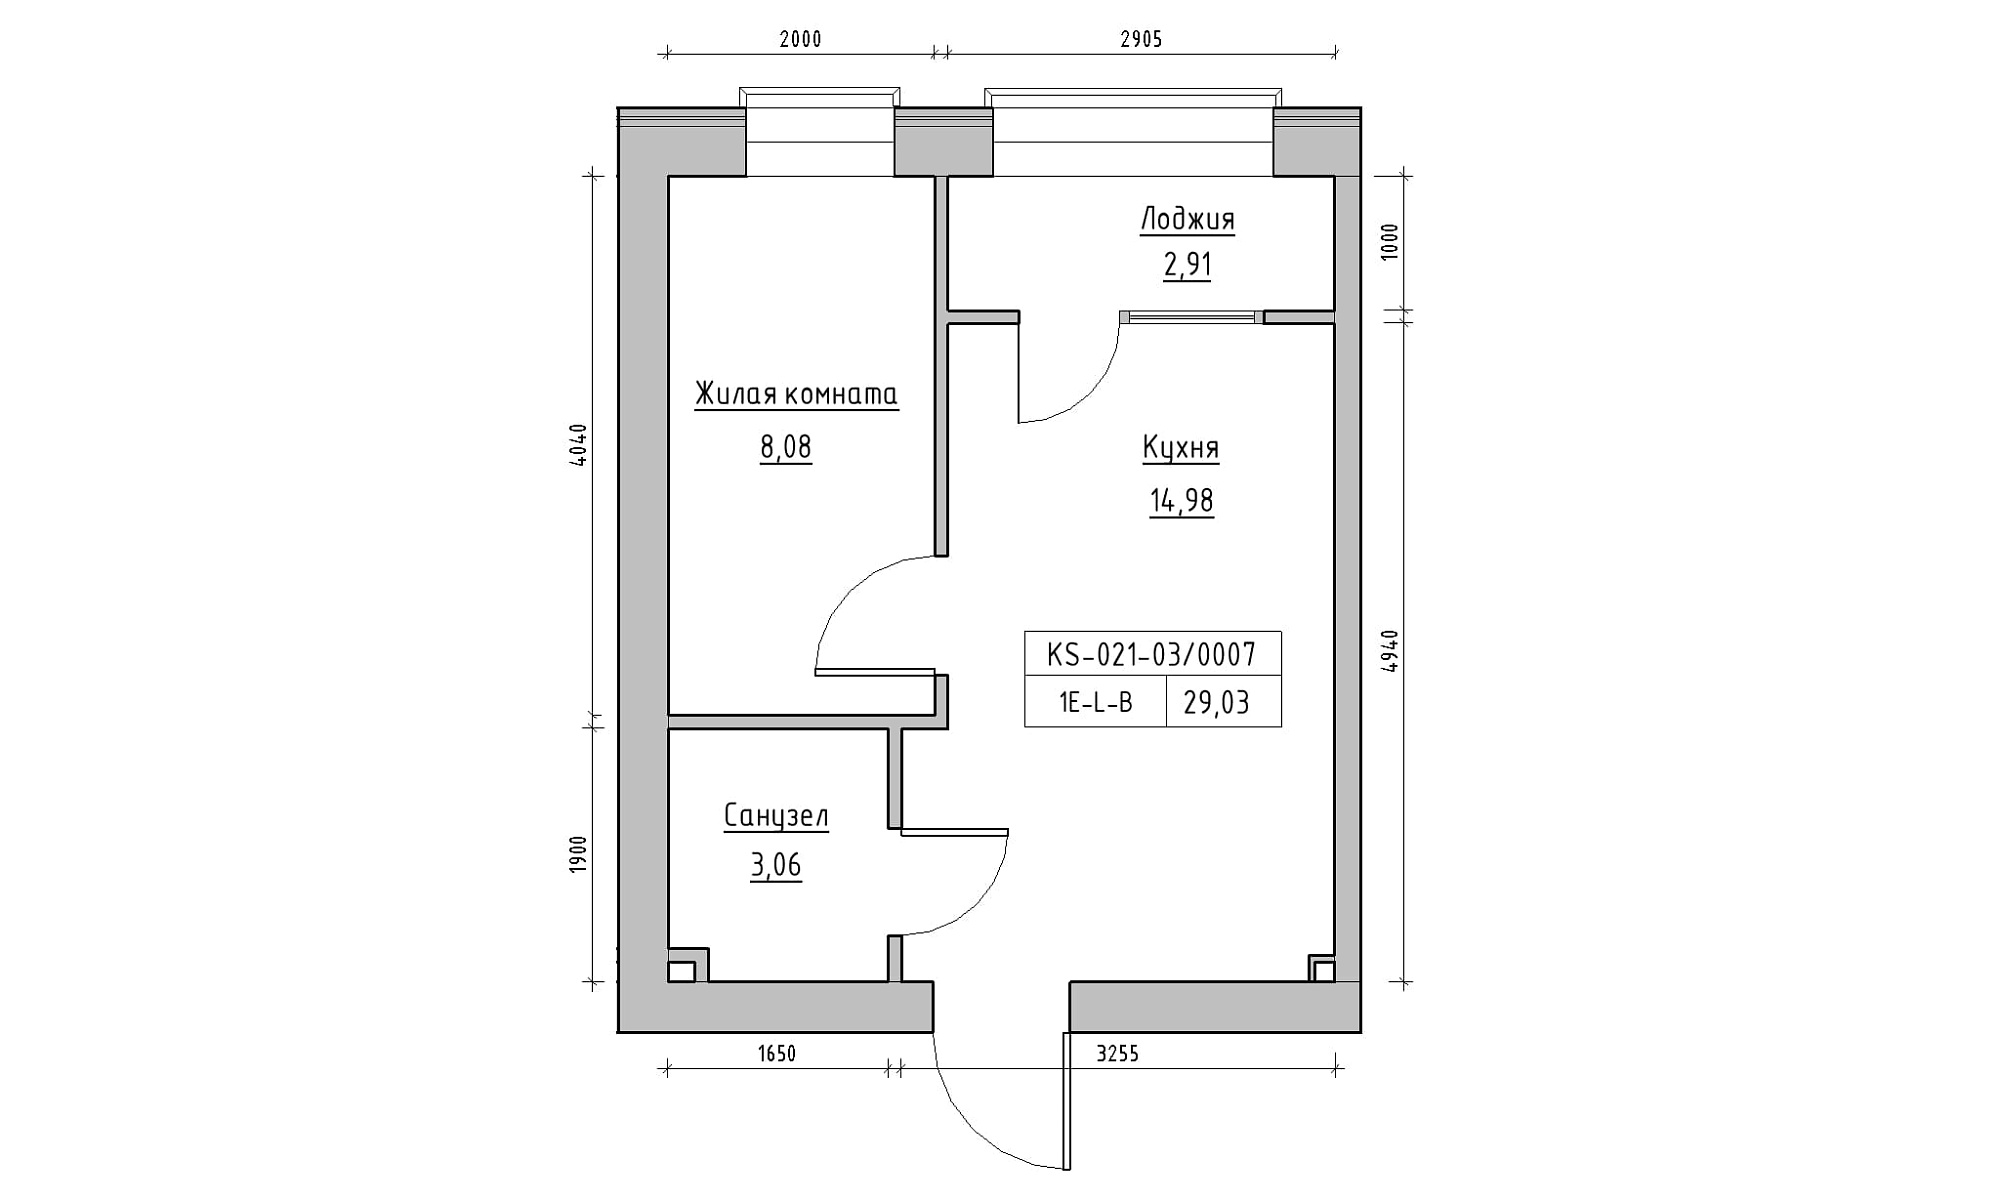 Планування 1-к квартира площею 29.03м2, KS-021-03/0007.